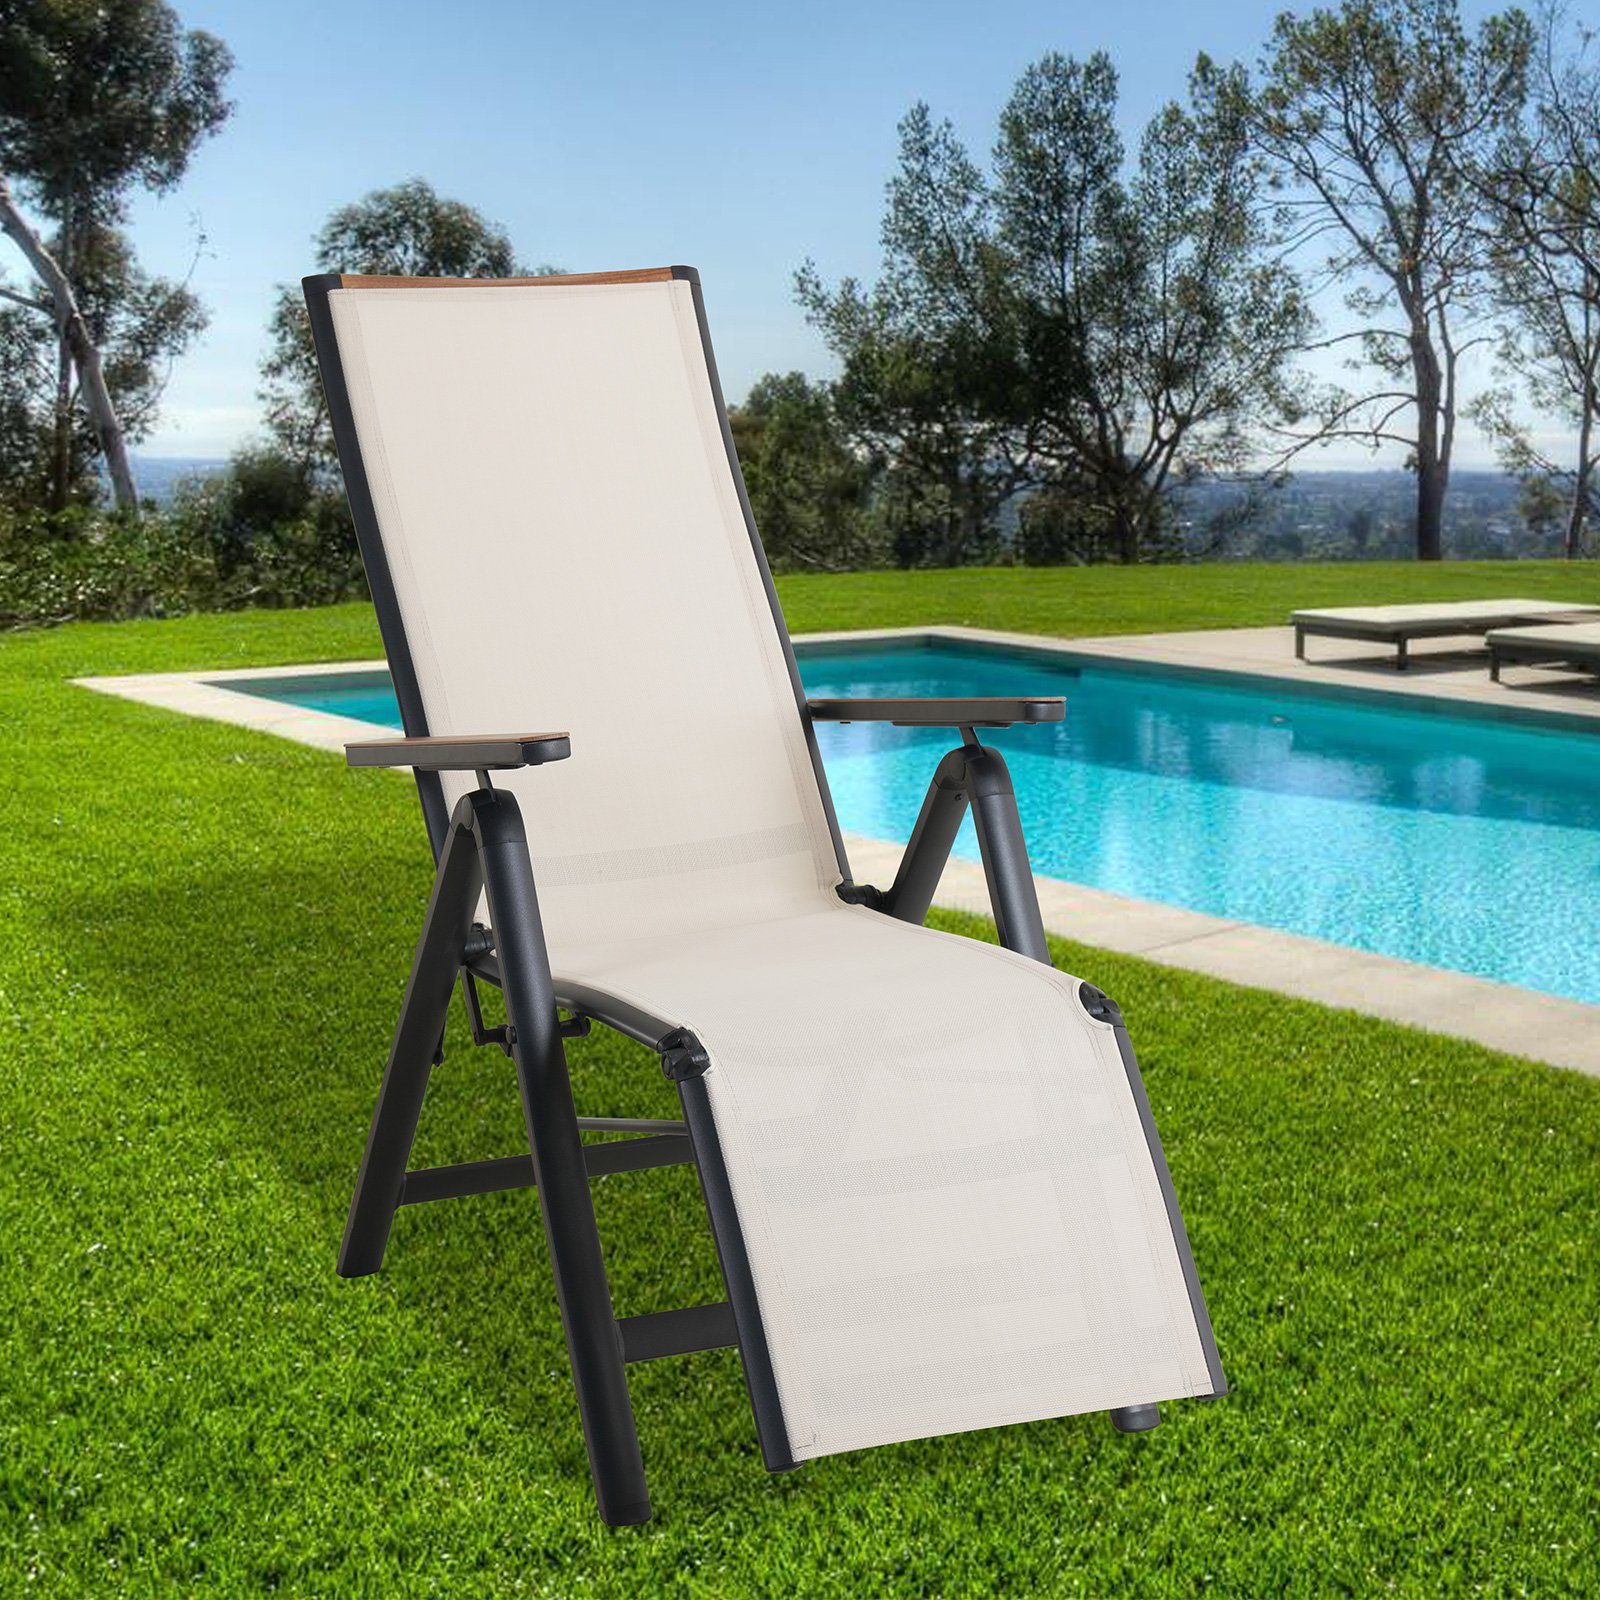 Liegestuhl, patio 6-fach Aluminium, verstellbare Rückenlehne aus verstellbar, Gartenliege Grand Beige Rückenlehne